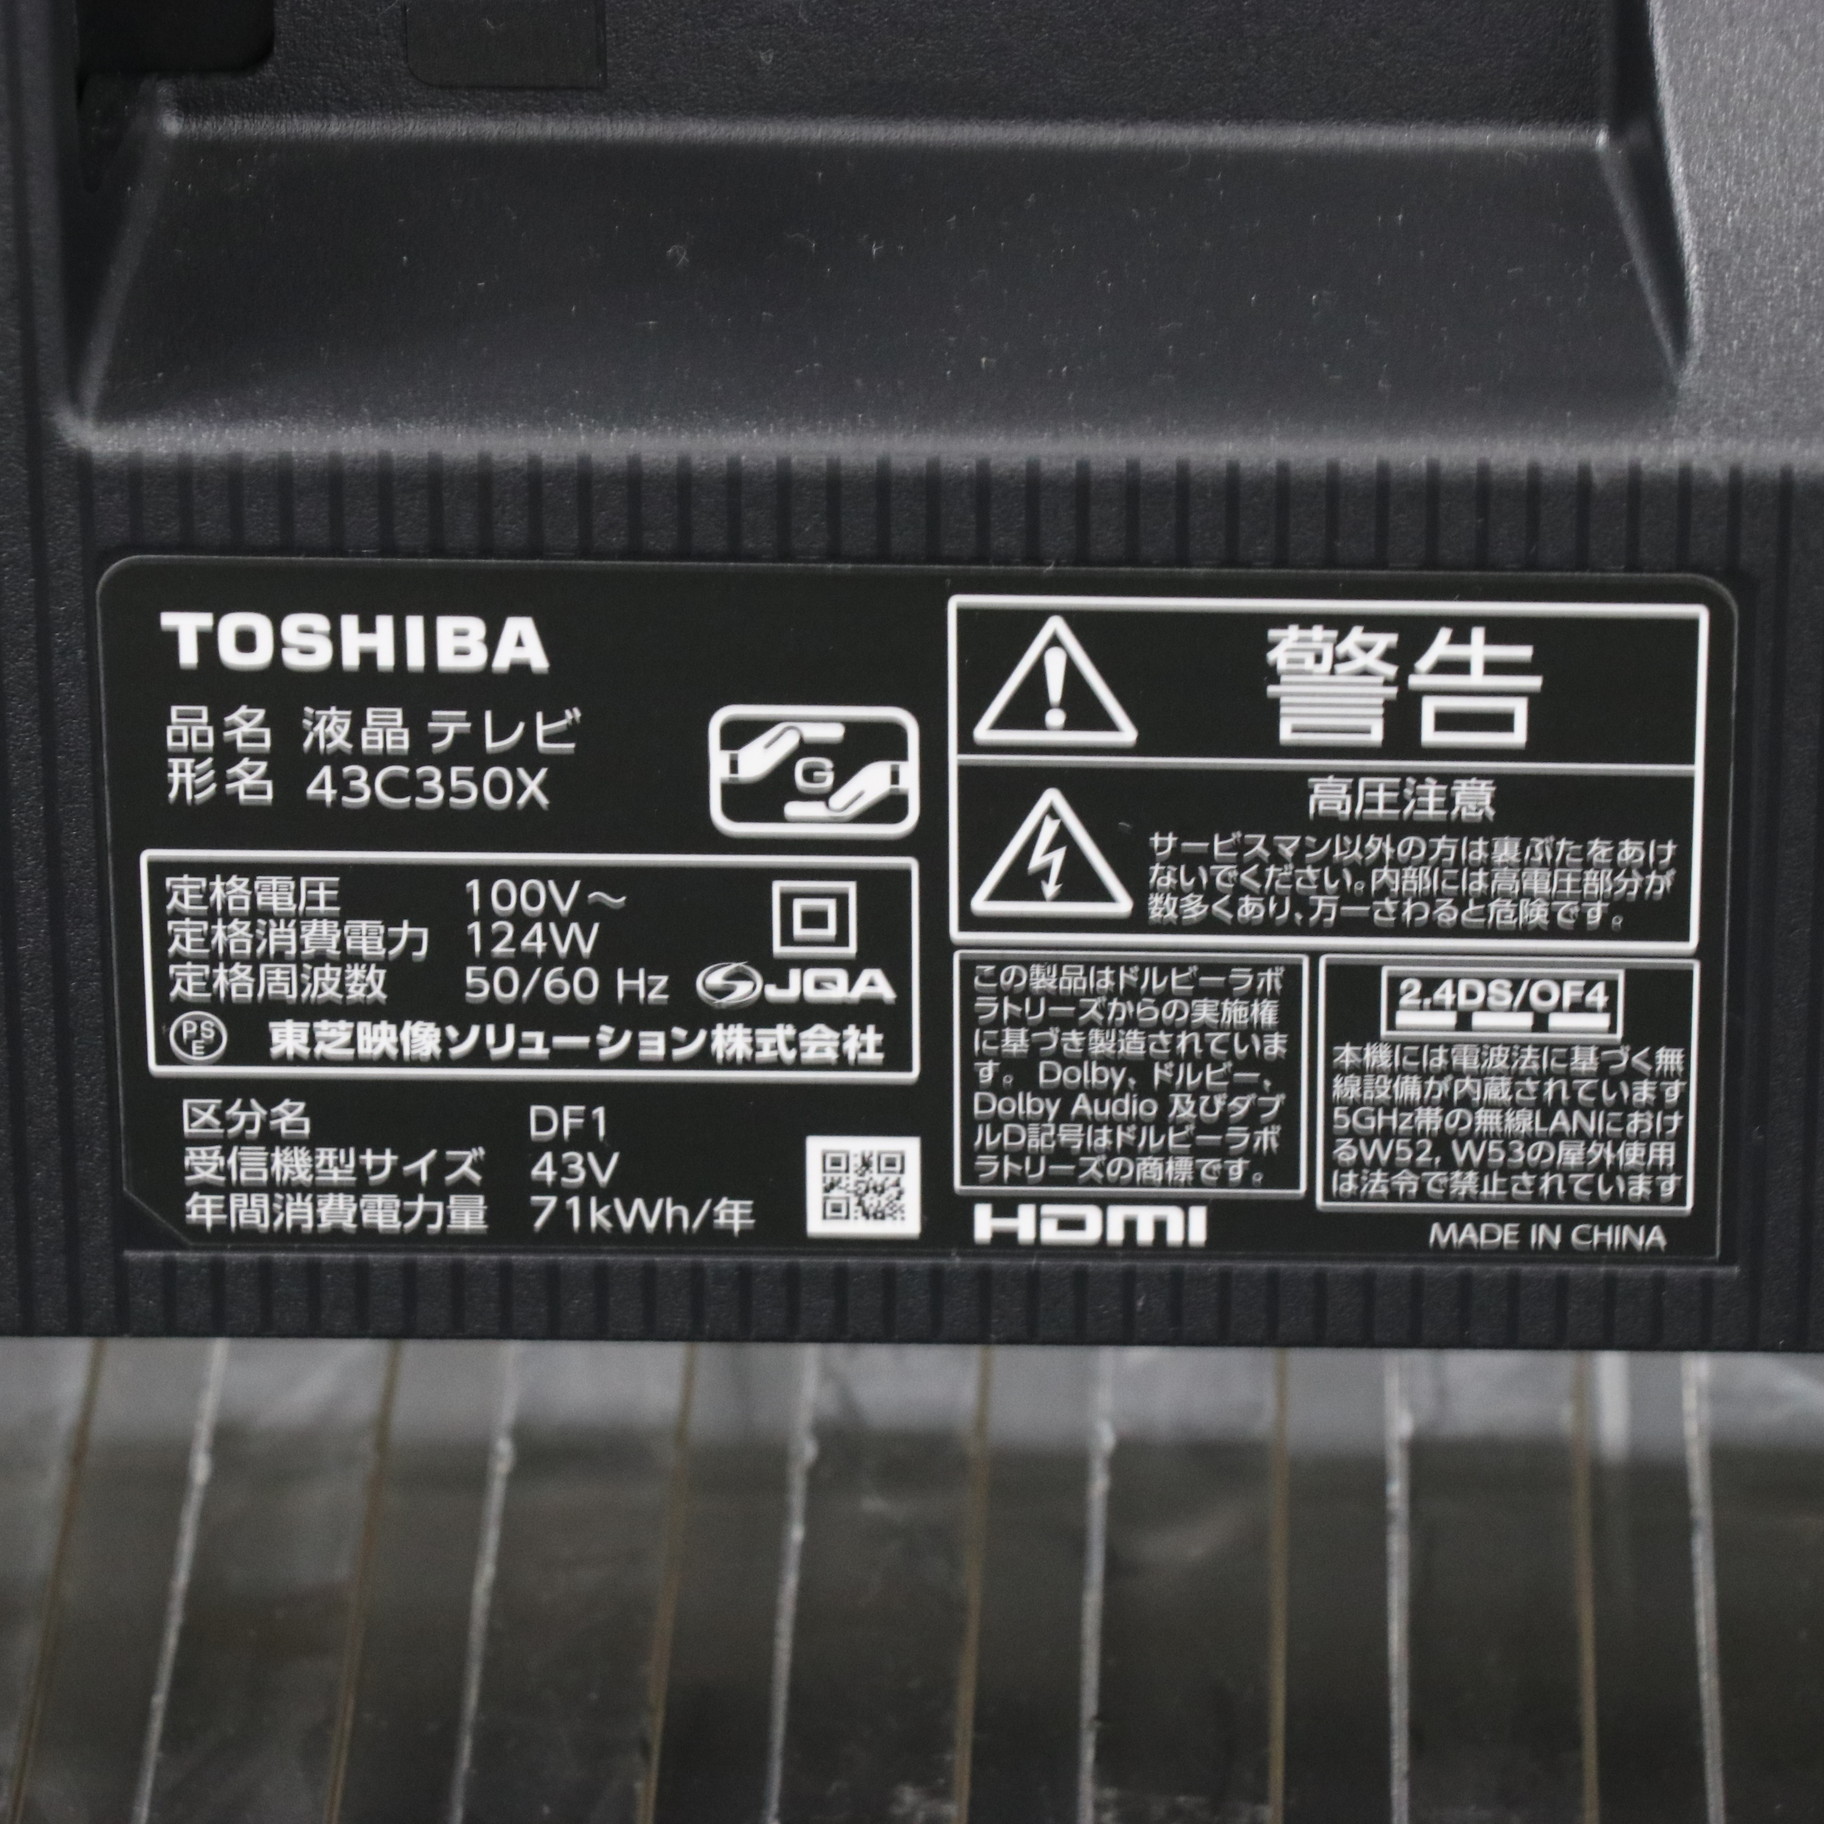 TOSHIBA REGZA 43C350X-